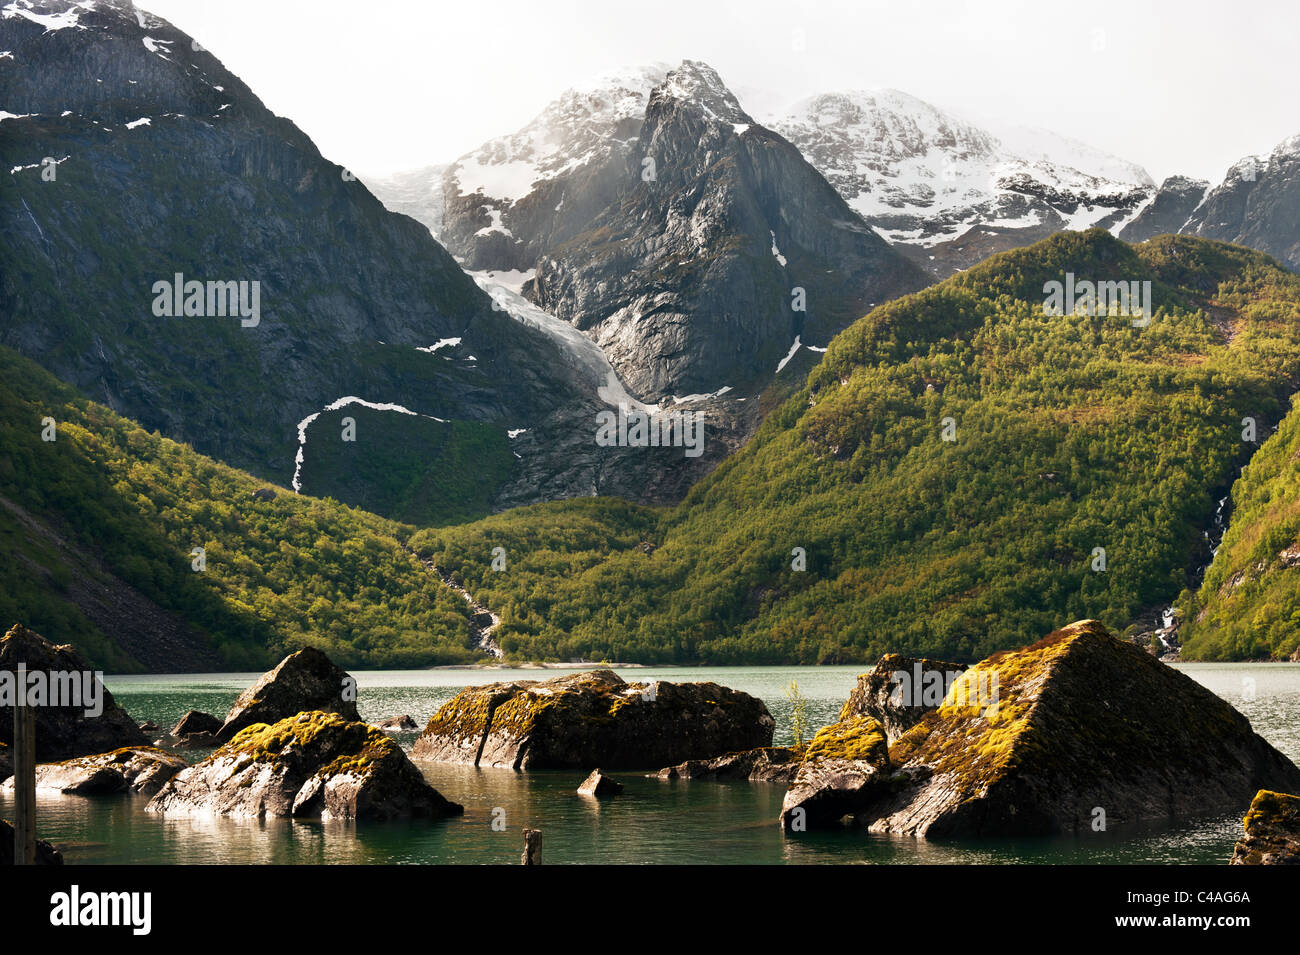 Vatnet et lac Bondhus, glacier Folgefonna, Sundal, sud de la Norvège Banque D'Images